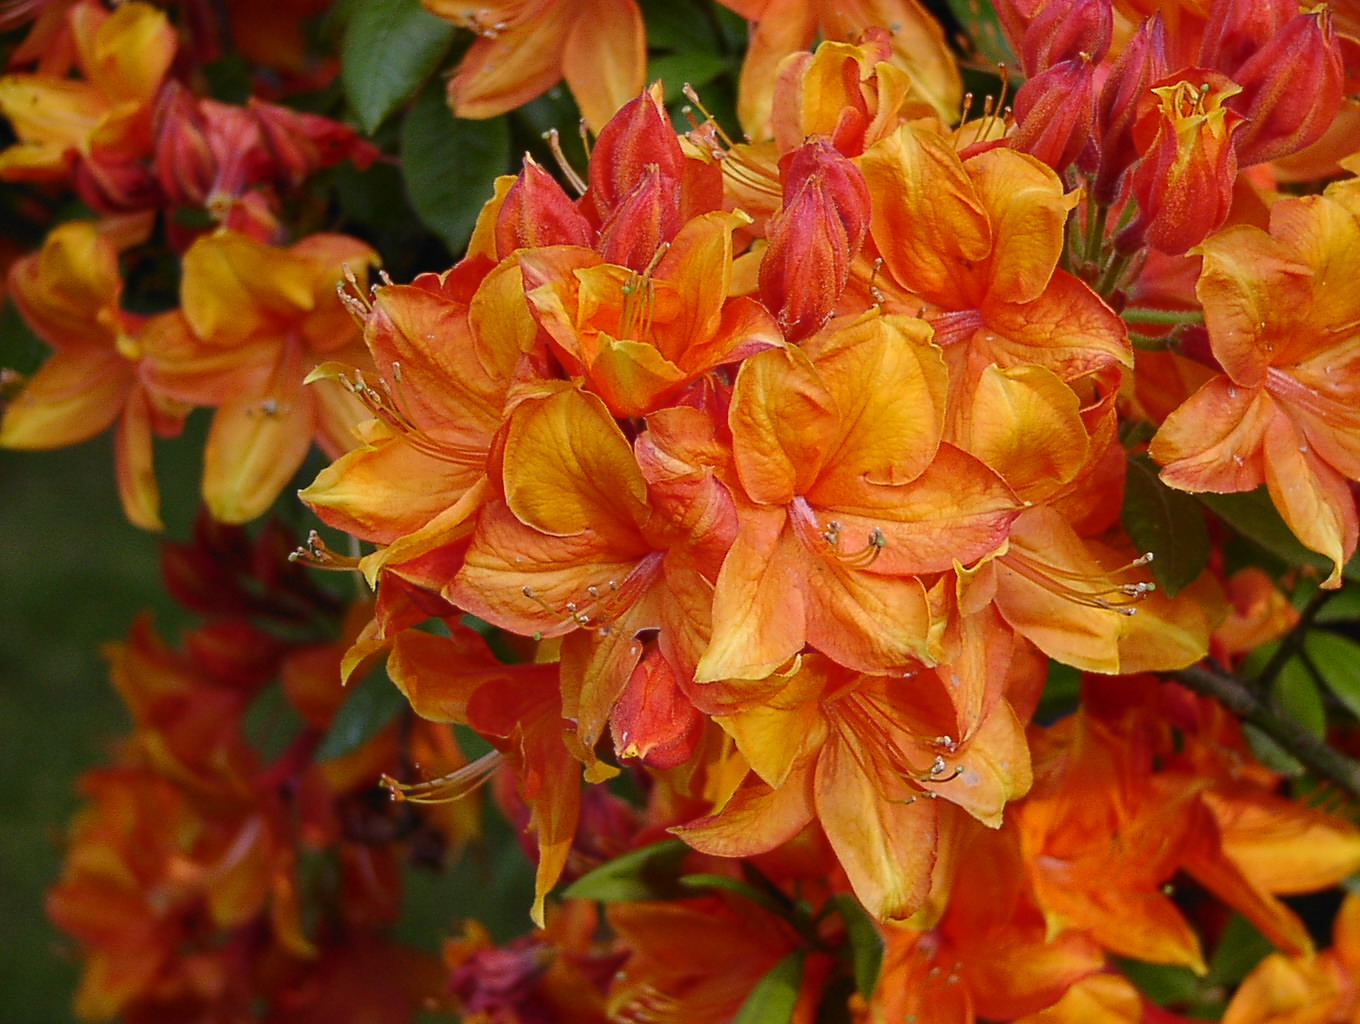 Rhododendron Azalea 'Golden Eagle': Die rot-orangen Blüten dieser Sorte bringen eine lebendige und warme Atmosphäre in Ihren Garten.